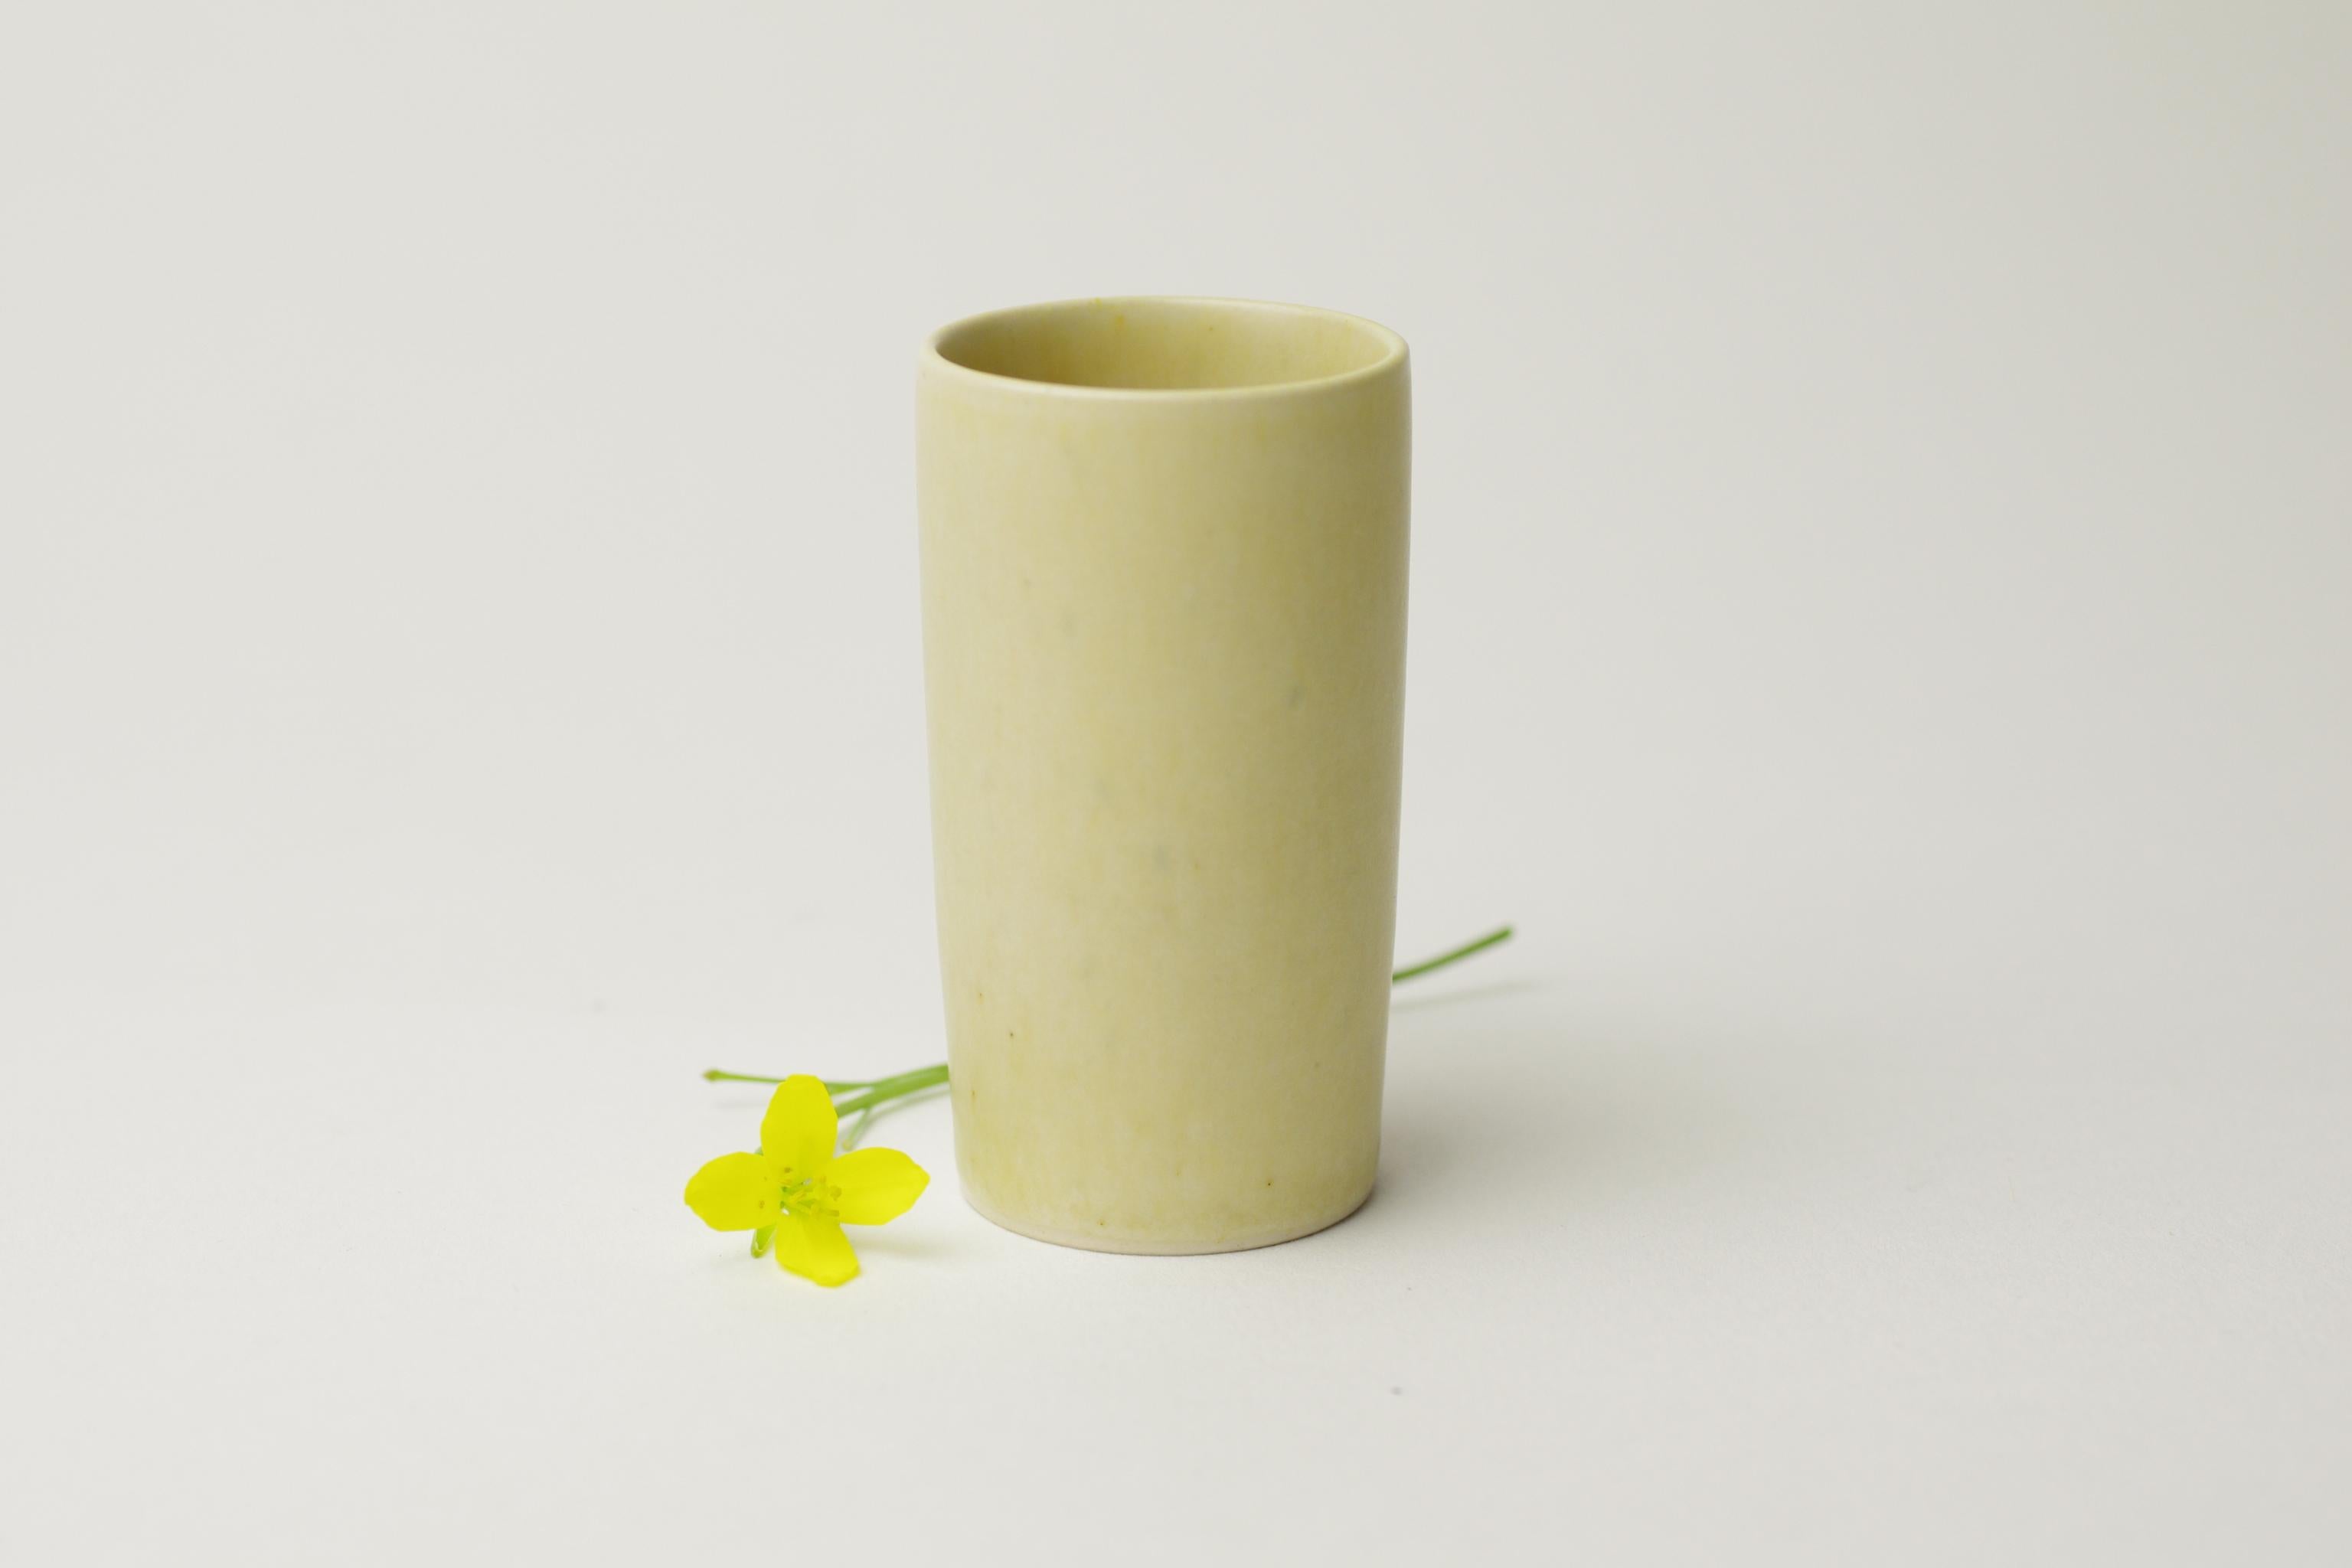 Beschreibung des Produkts:
Diese kleine Vase wurde von Per Linnemann-Schmidt für sein Unternehmen Palshus entworfen. Per gründete Palshus zusammen mit seiner Frau Annelise im Jahr 1949 in Sengløse (in der Nähe von Kopenhagen). Palhus schloss seine